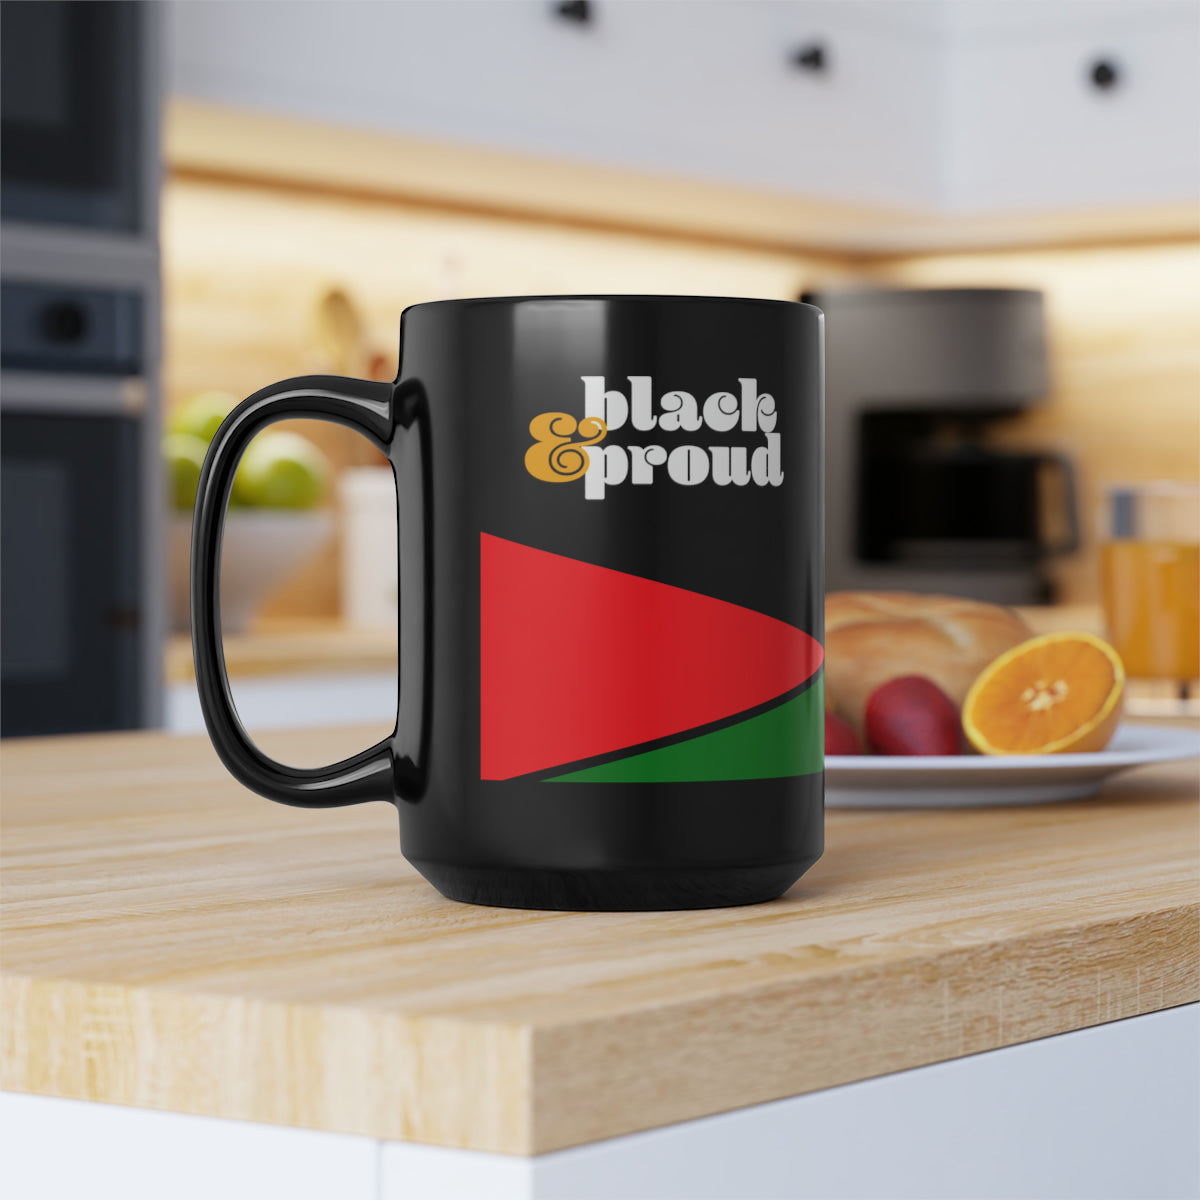 Black & Proud Coffee Mug - Black